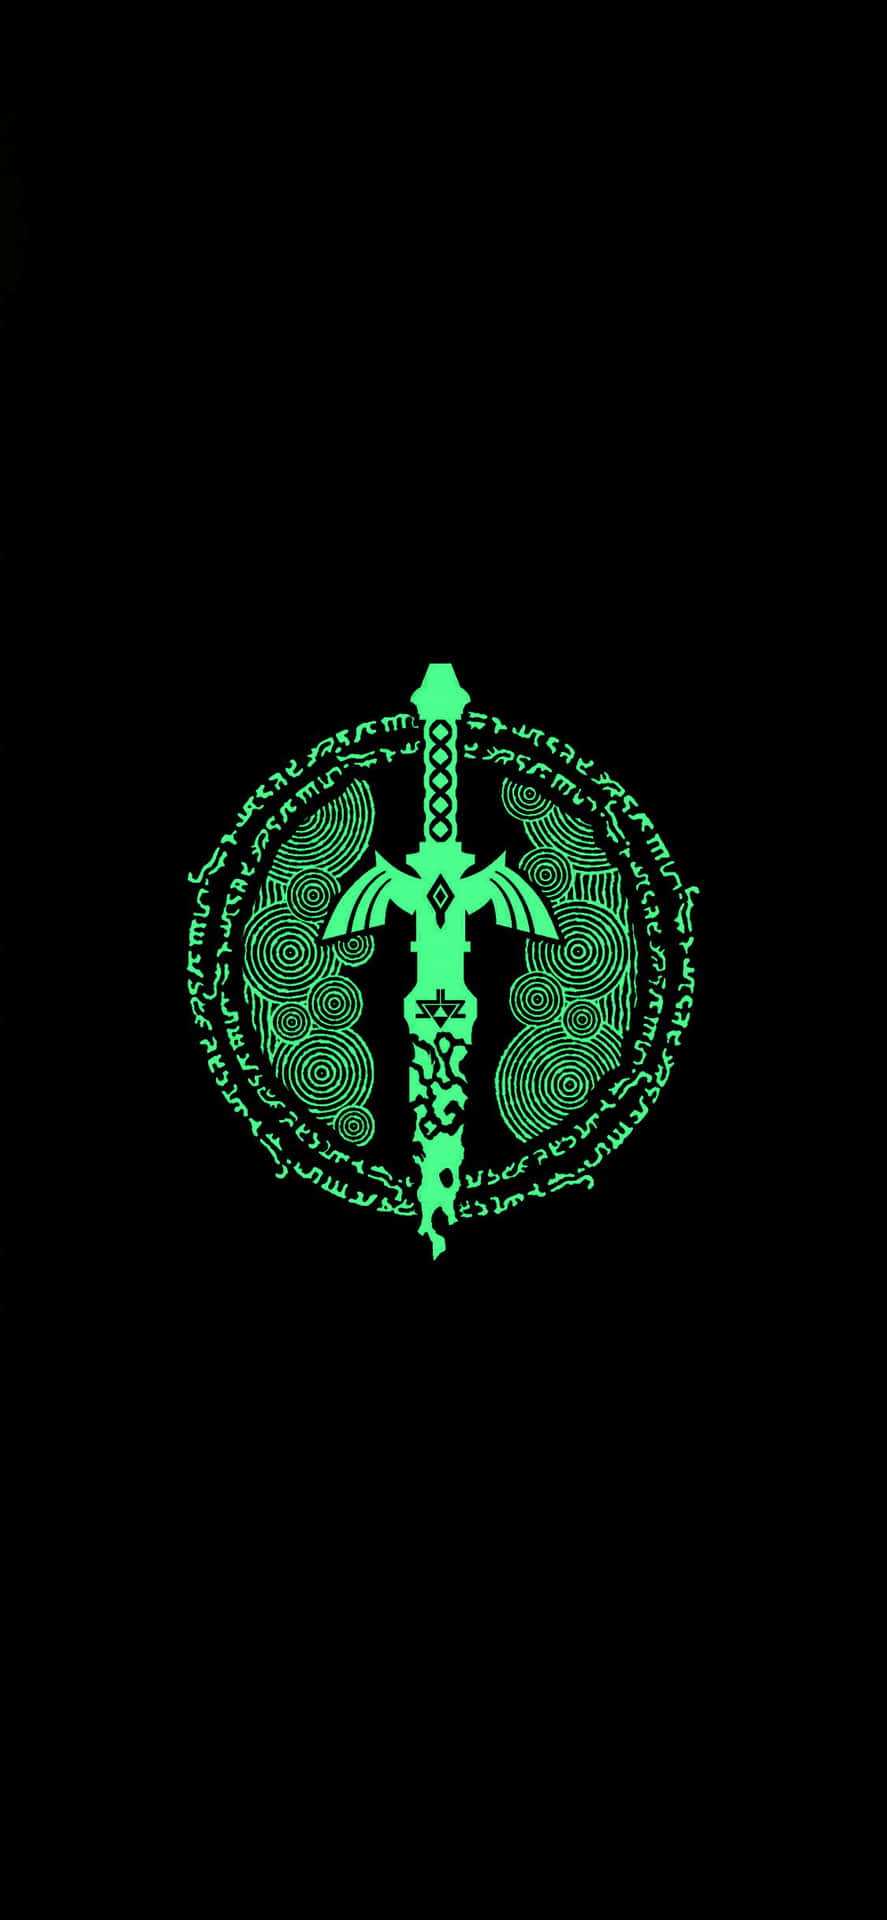 Neon Green Cyber Sword Design Wallpaper